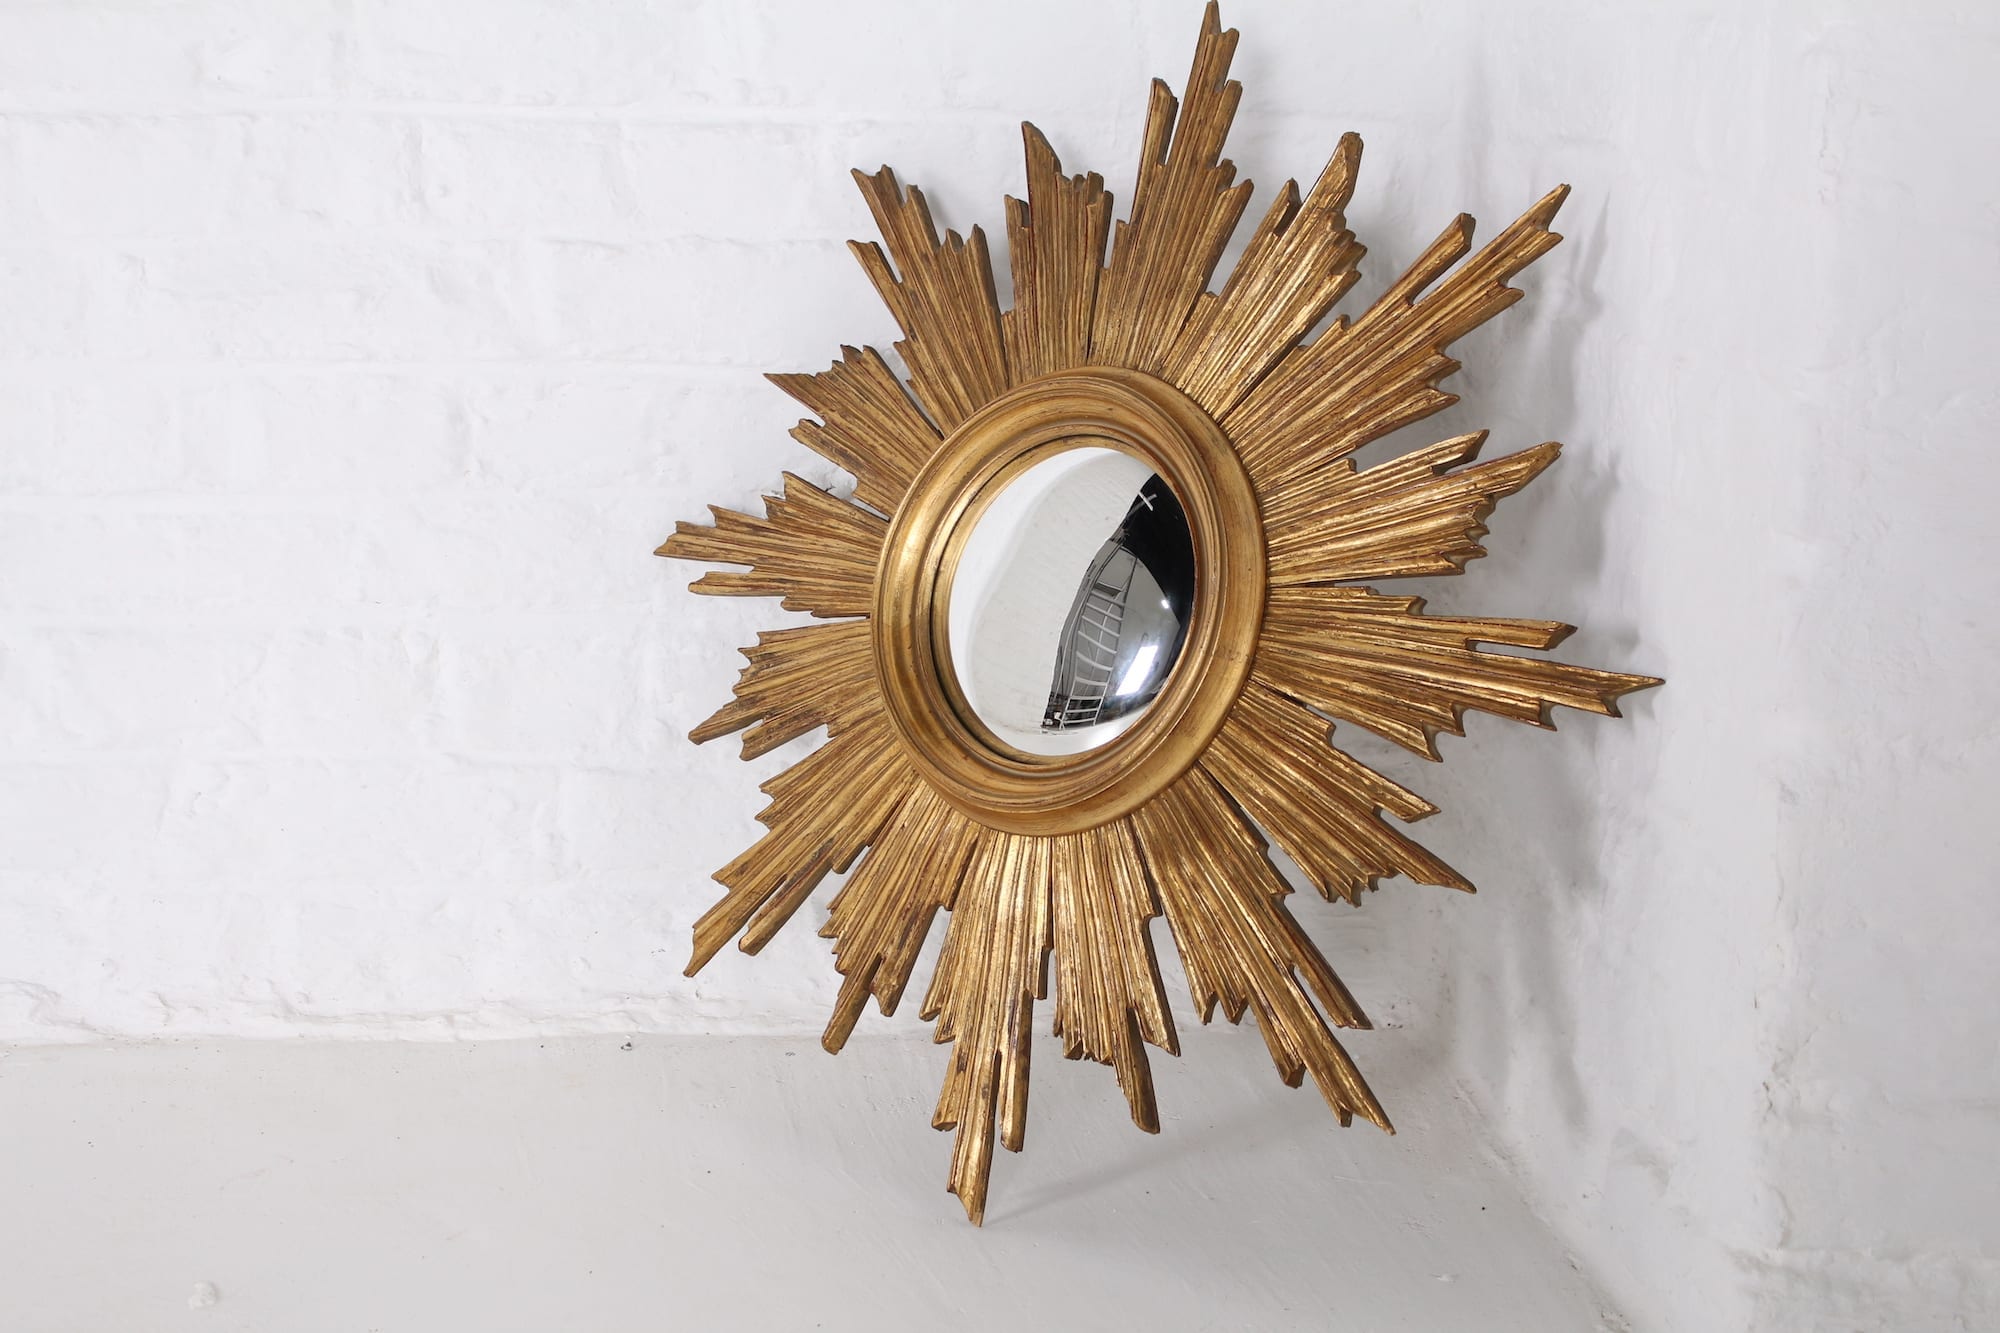 ② Ancien miroir soleil œil de sorcière métal — Antiquités